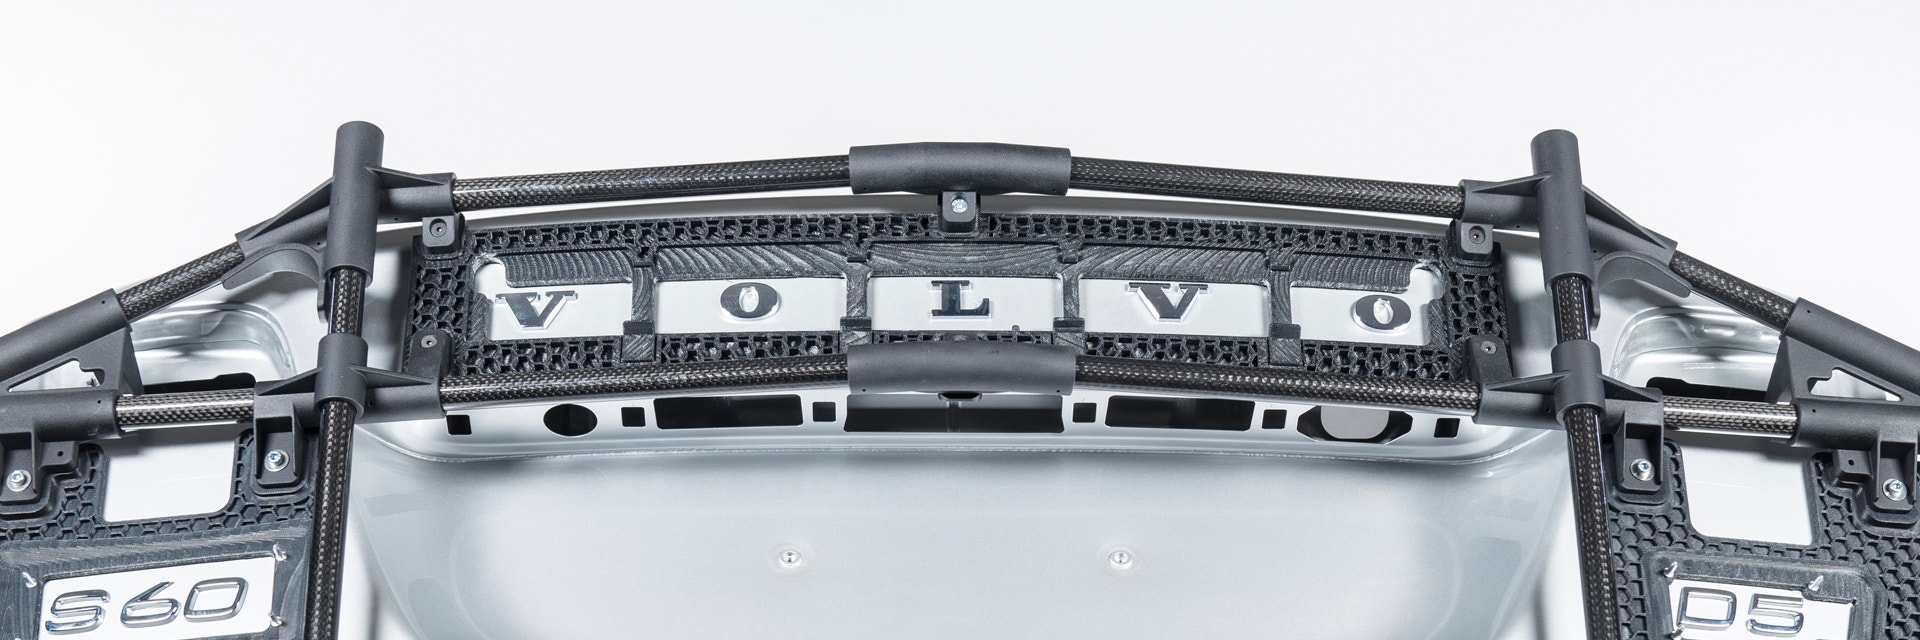 Nahaufnahme der 3D-gedruckten Klebeschablone und des Volvo-Logos